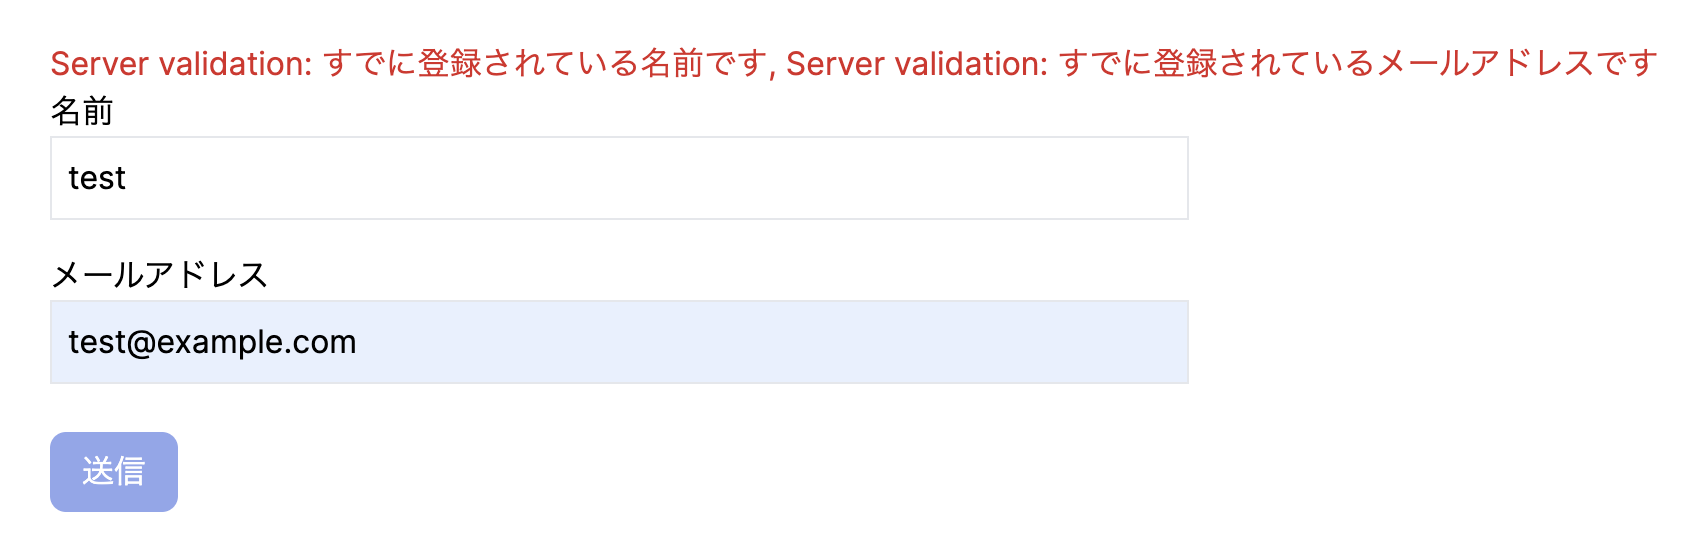 server-side_validation.png